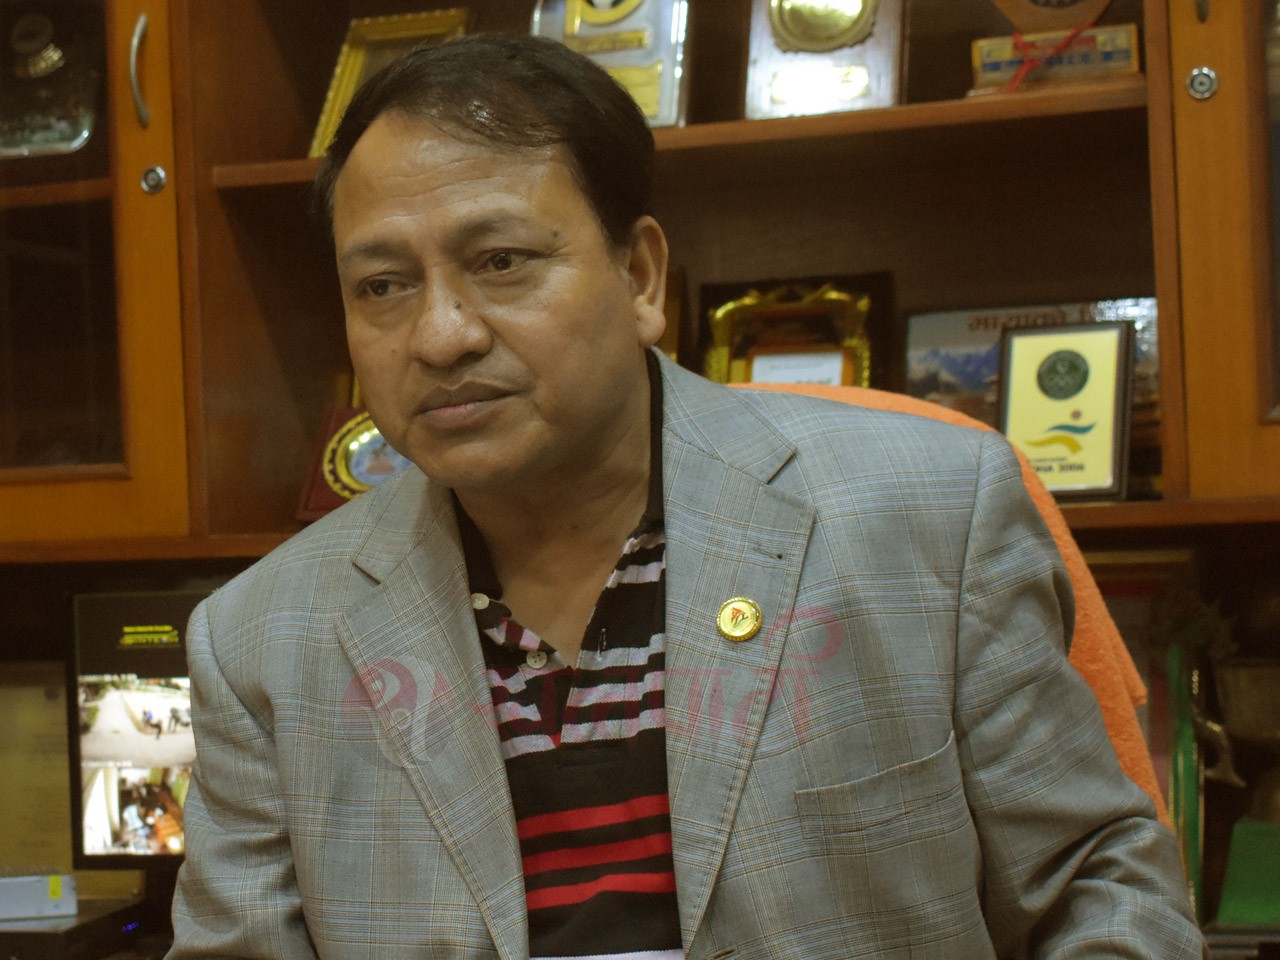 नेपाली क्रिकेट टिमलाई बधाई दिदै सदस्यसचिब बिष्टले भने, 'खेलाडीले हासिल गरेको उपलब्धि मर्न दिन्न'